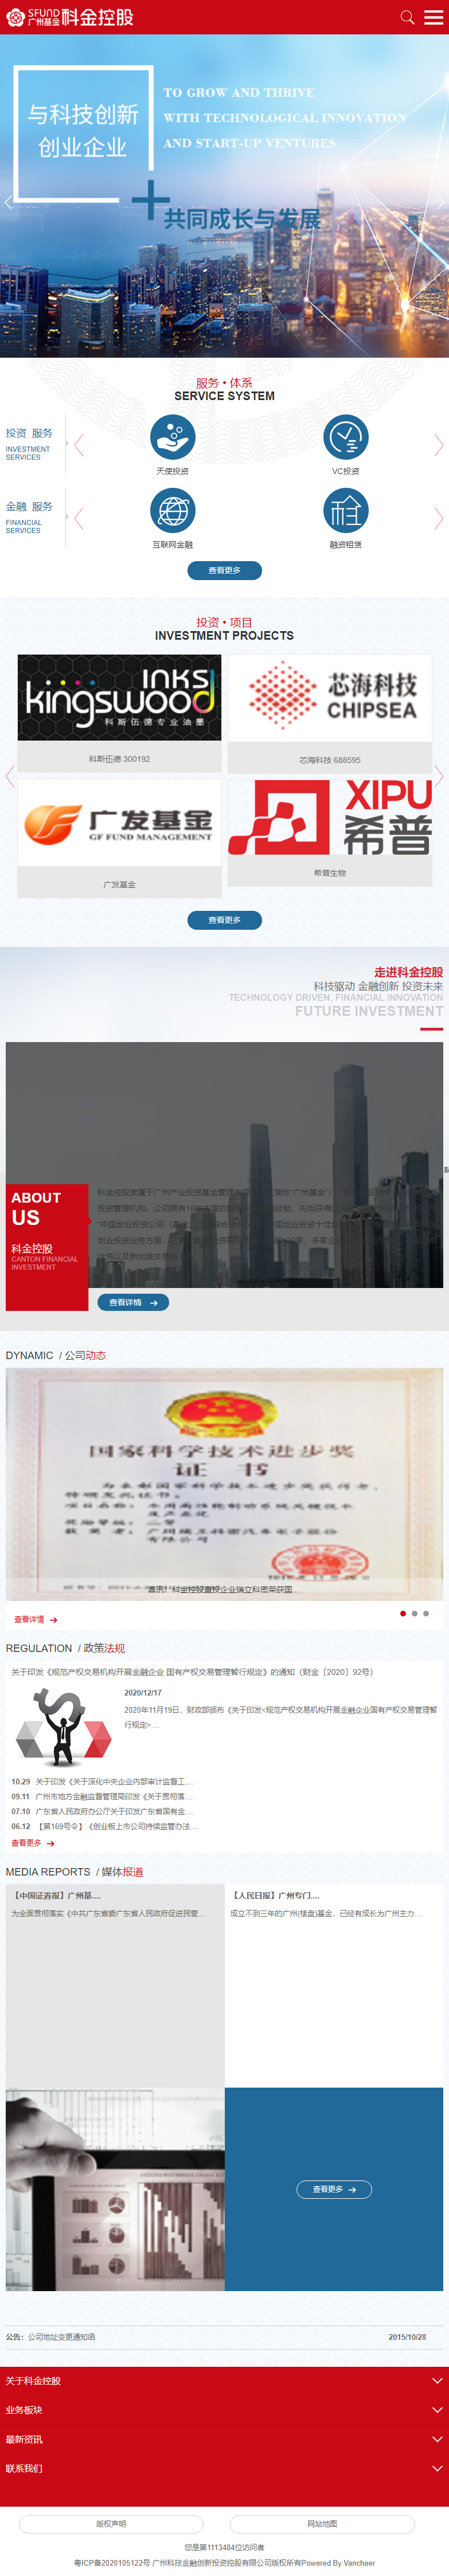 广州科技金融创新投资控股有限公司网站案例